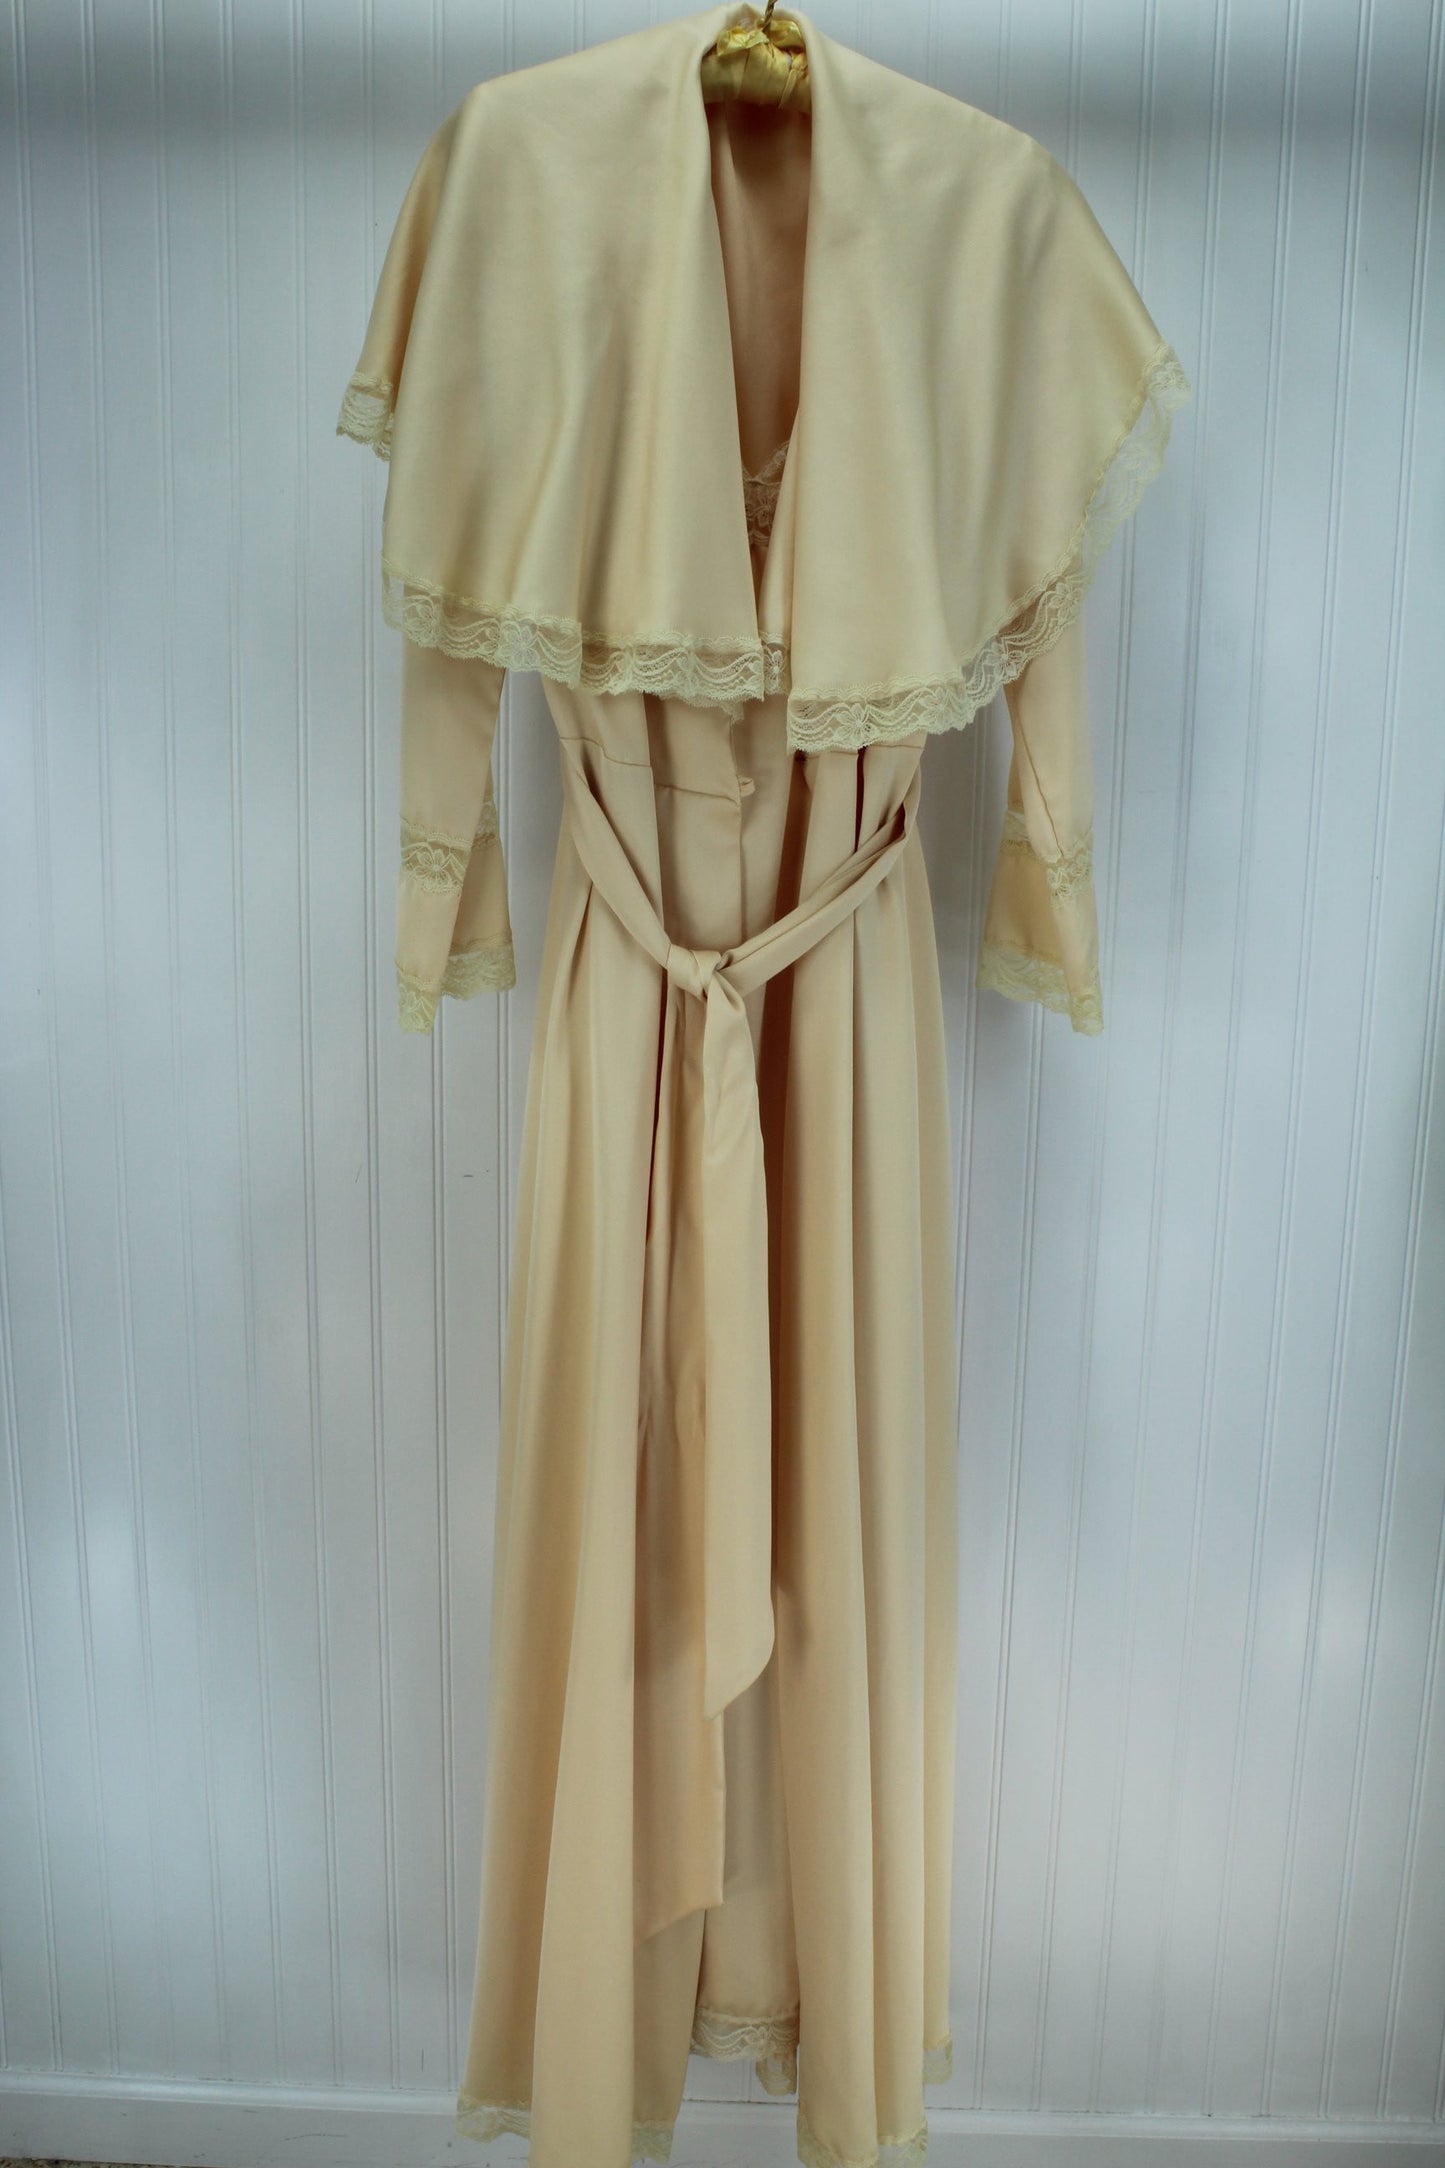 QUINTANNA Gown Peignoir Set  Nude Matching Lace Exquisite Trousseau Size M sensuous